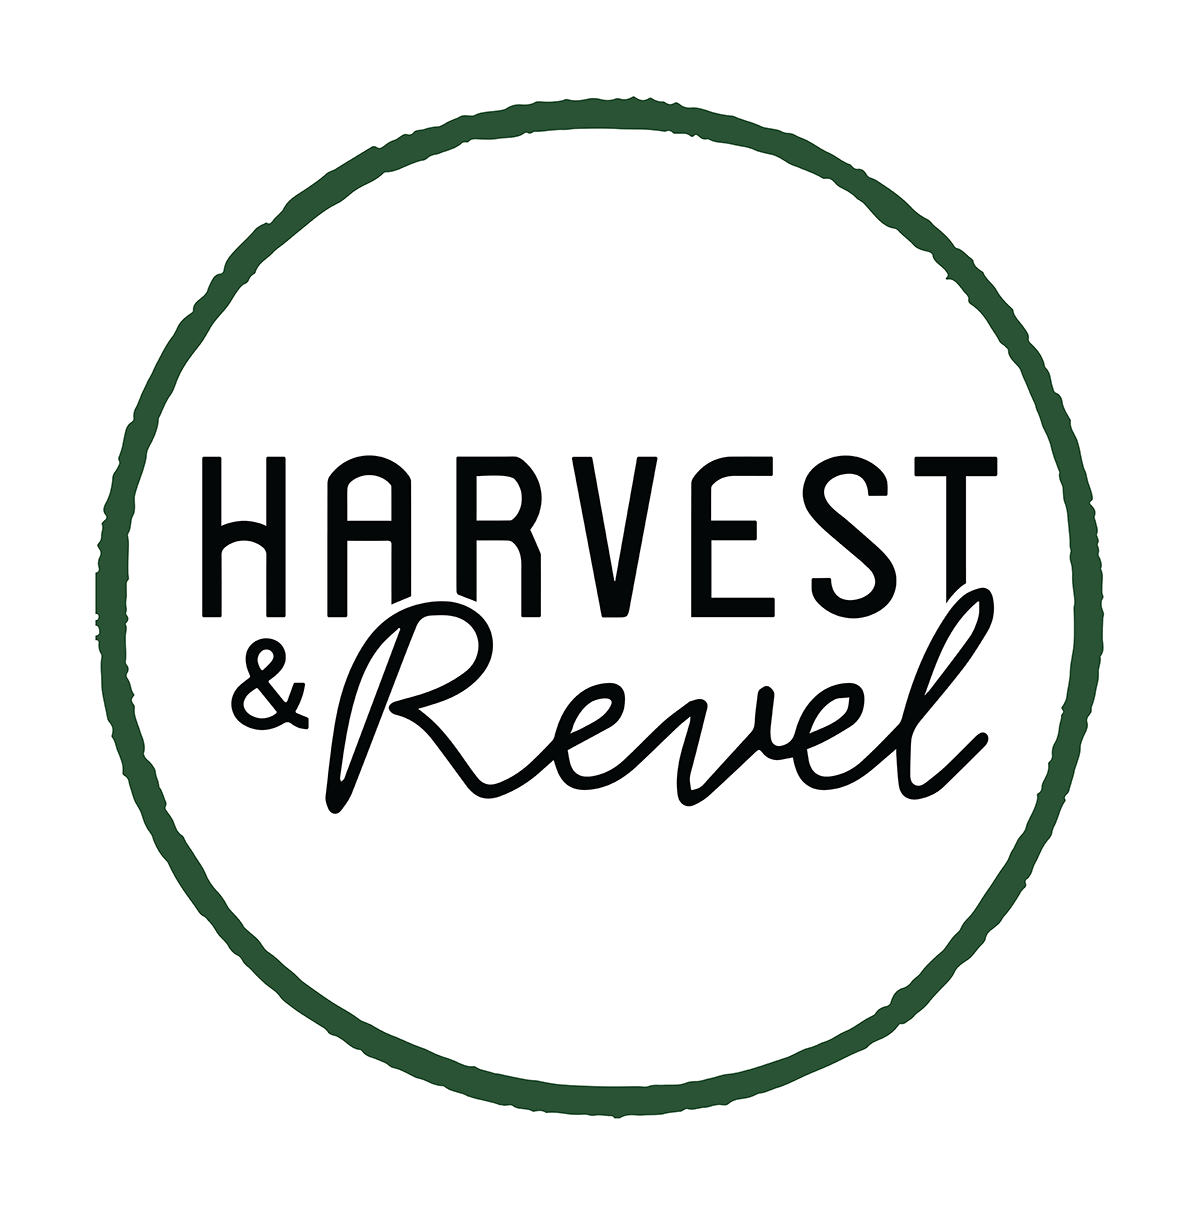 Harvest & Revel